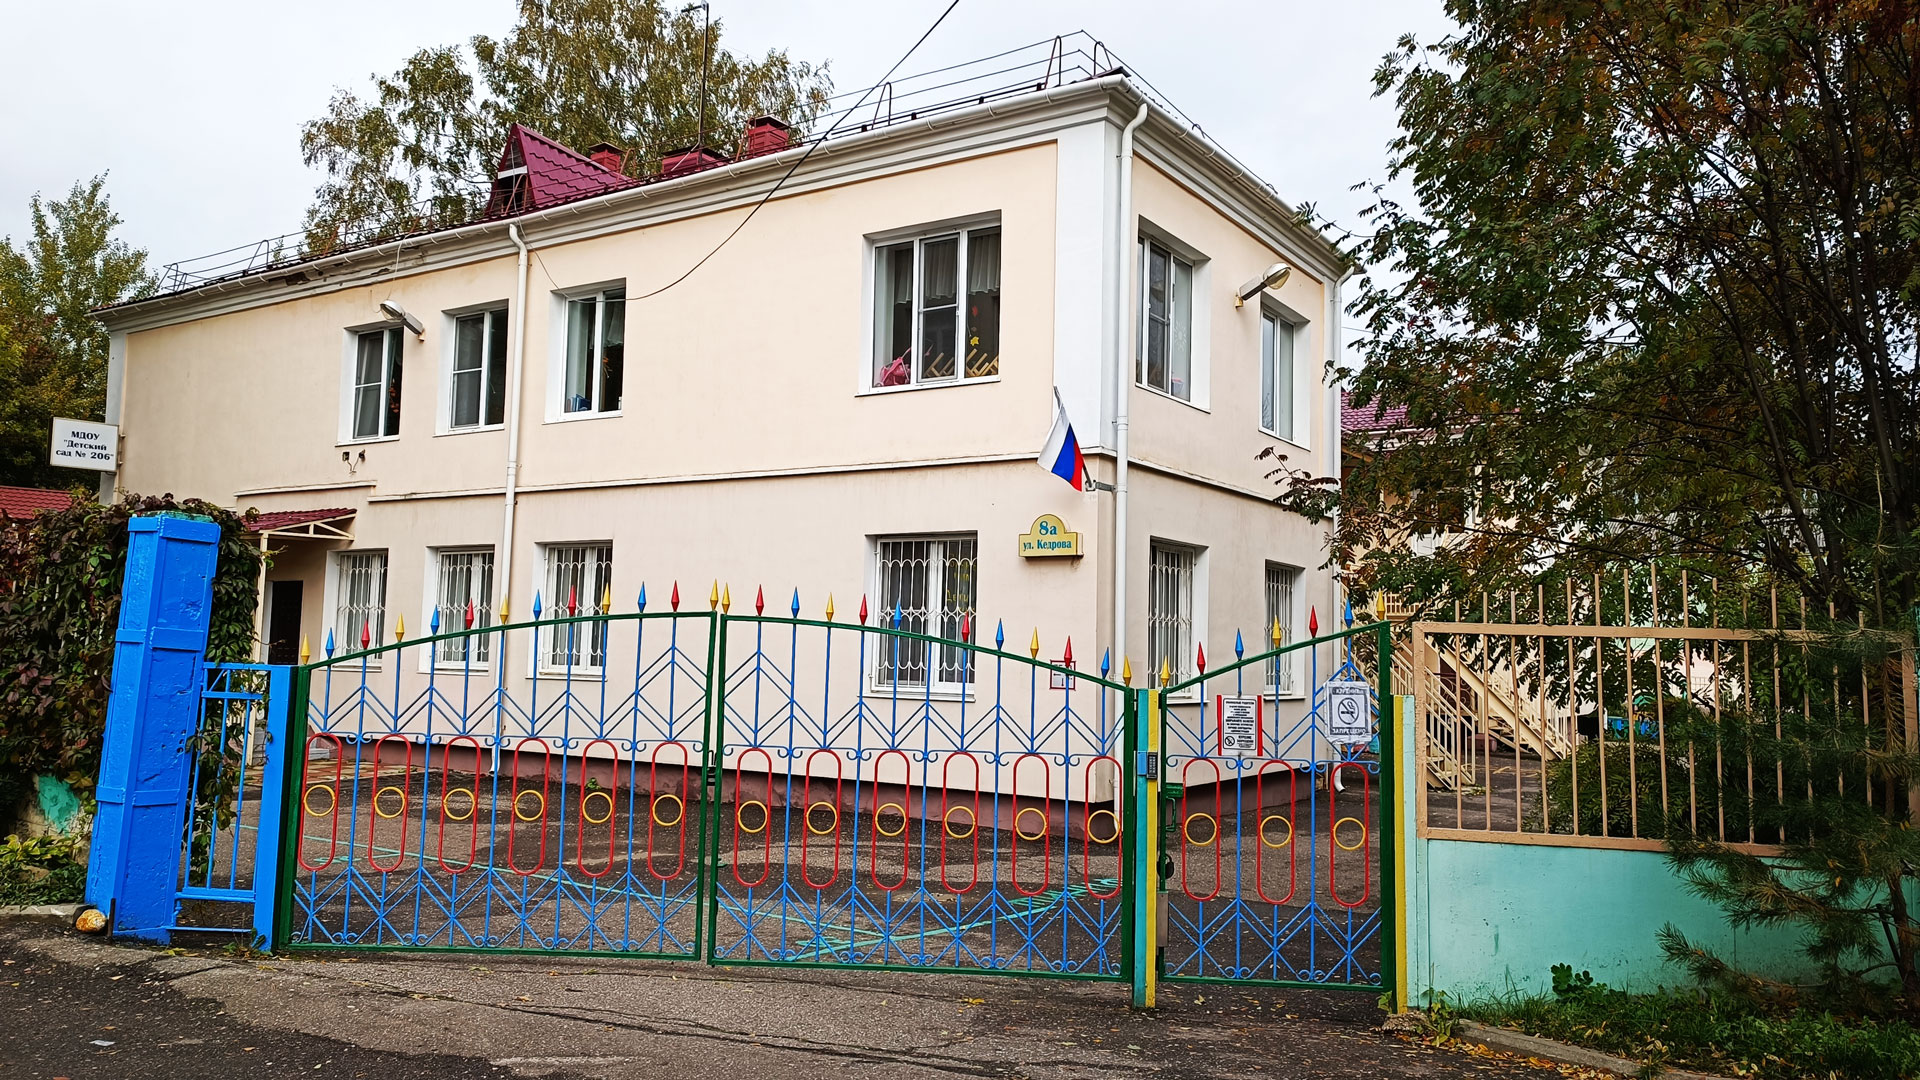 Детский сад 206 Ярославль: общий вид здания.